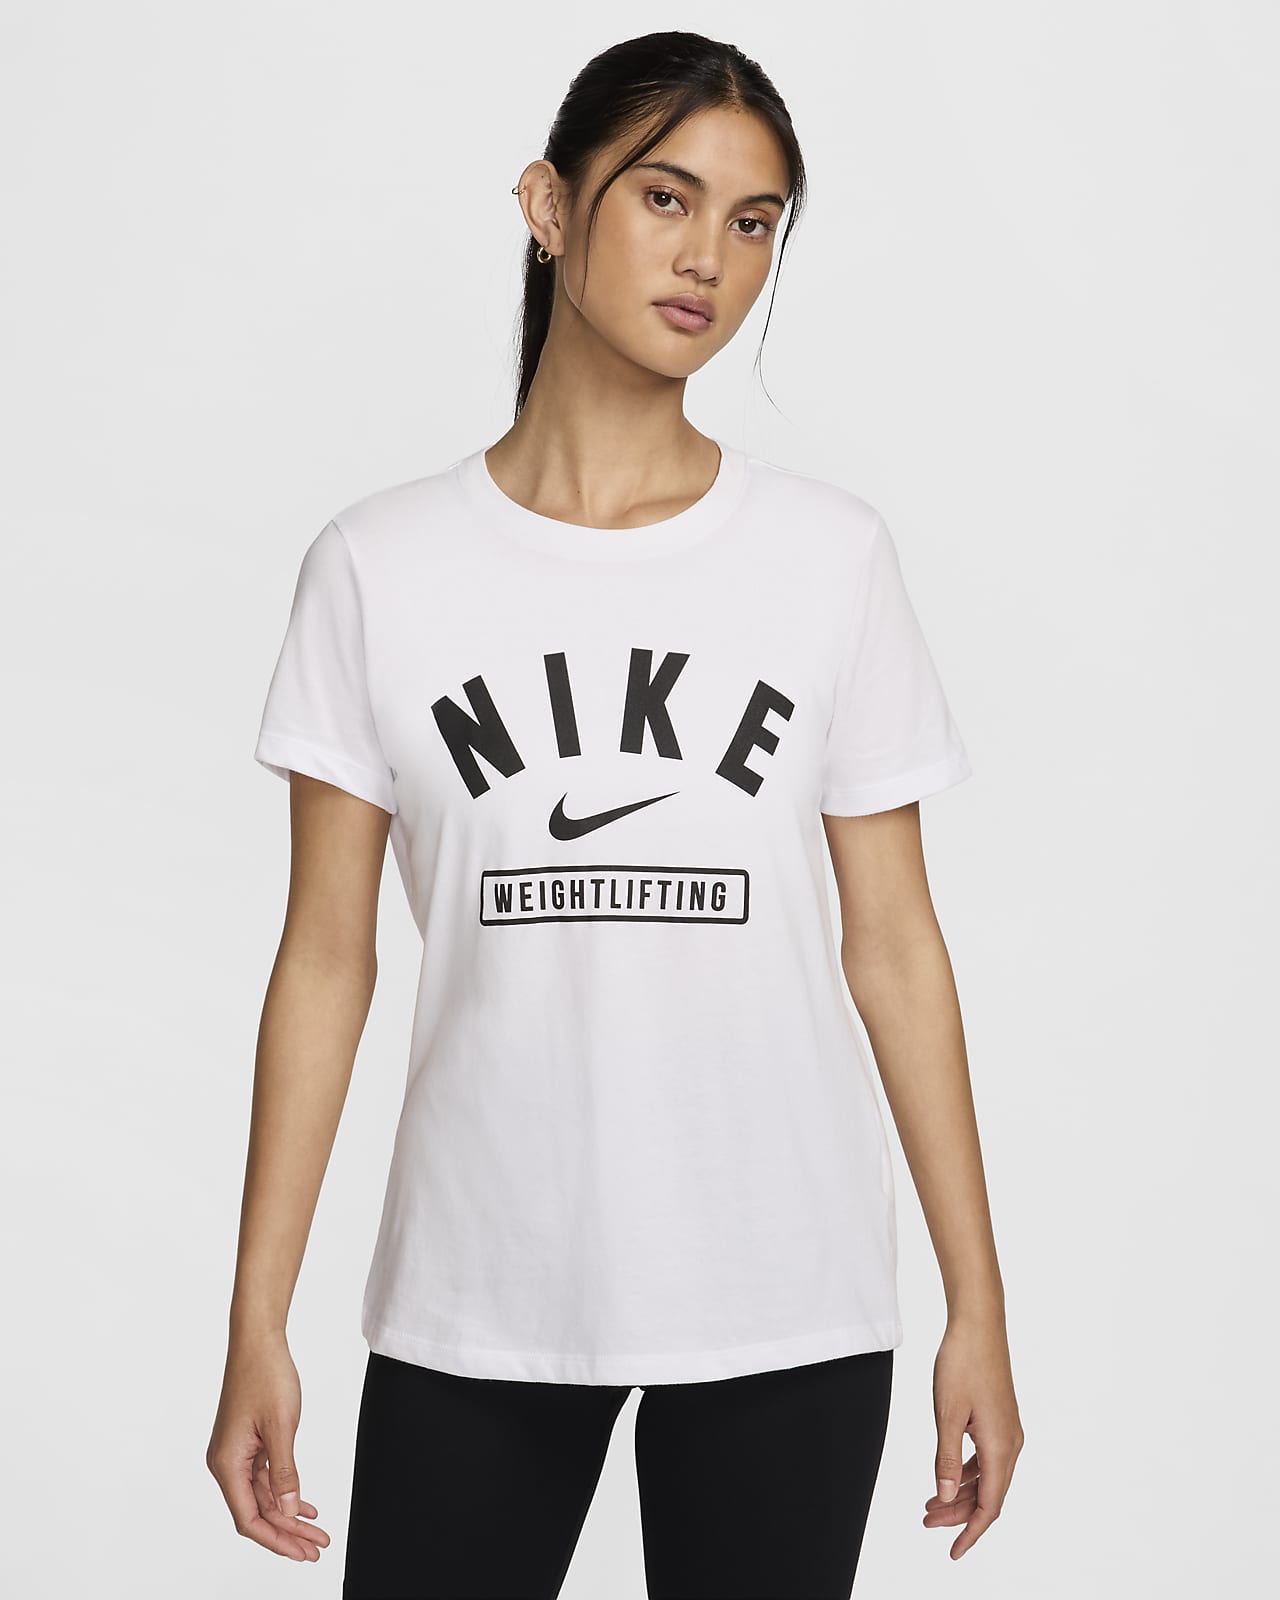 Nike Women's Weightlifting T-Shirt